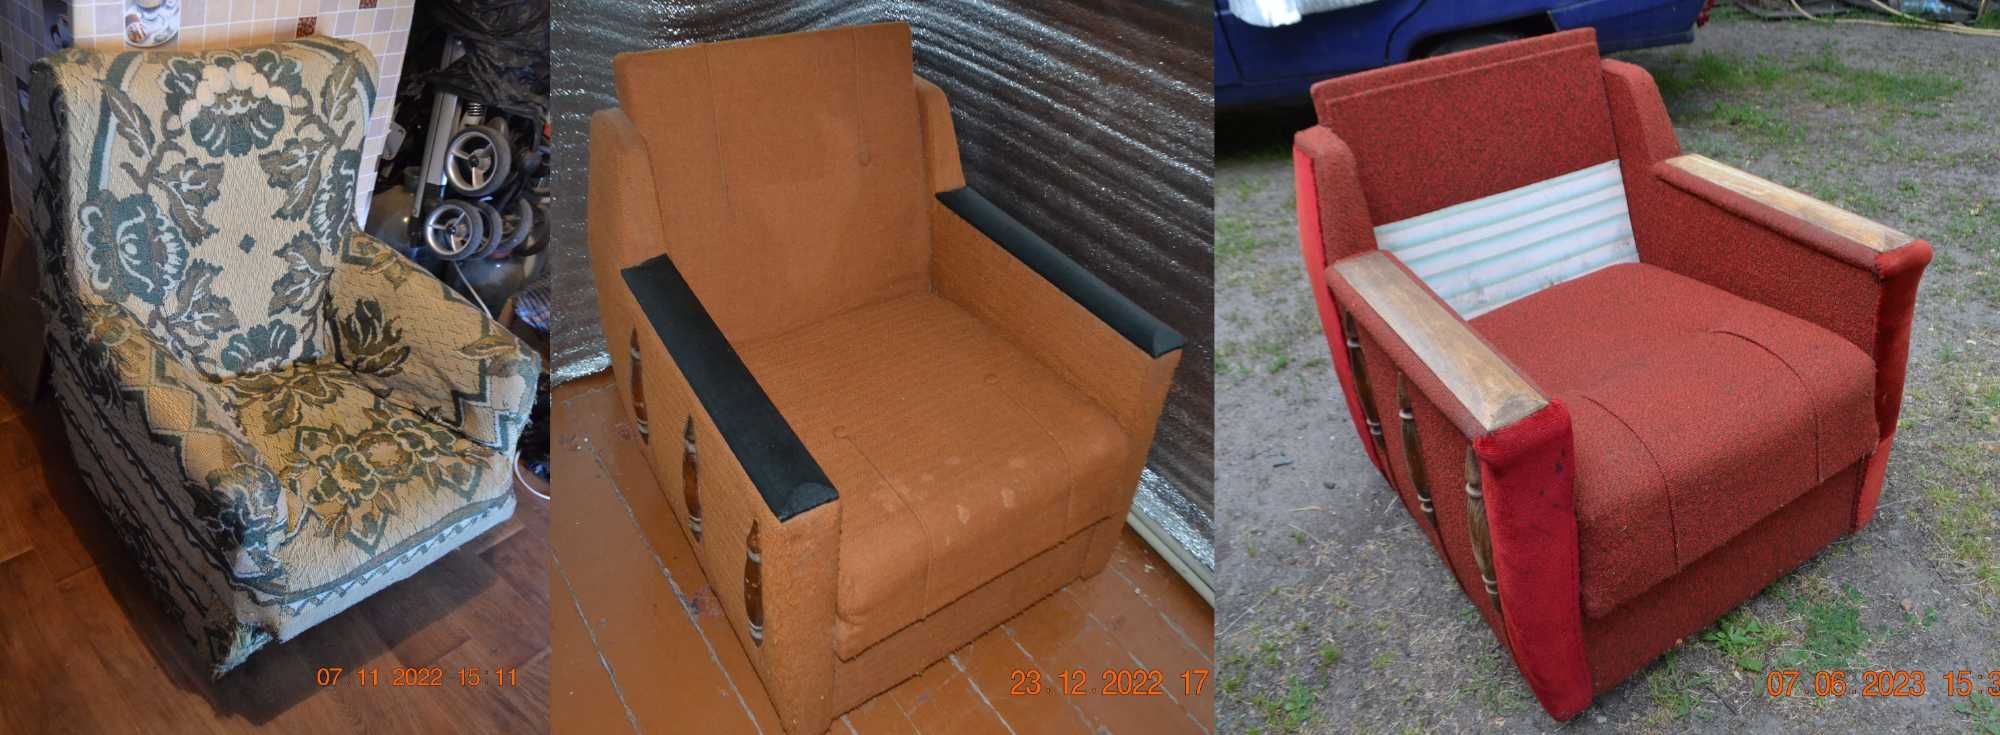 Кресло советское на колёсиках. Не раскладное. Сделано в СССР. 80-ые г.